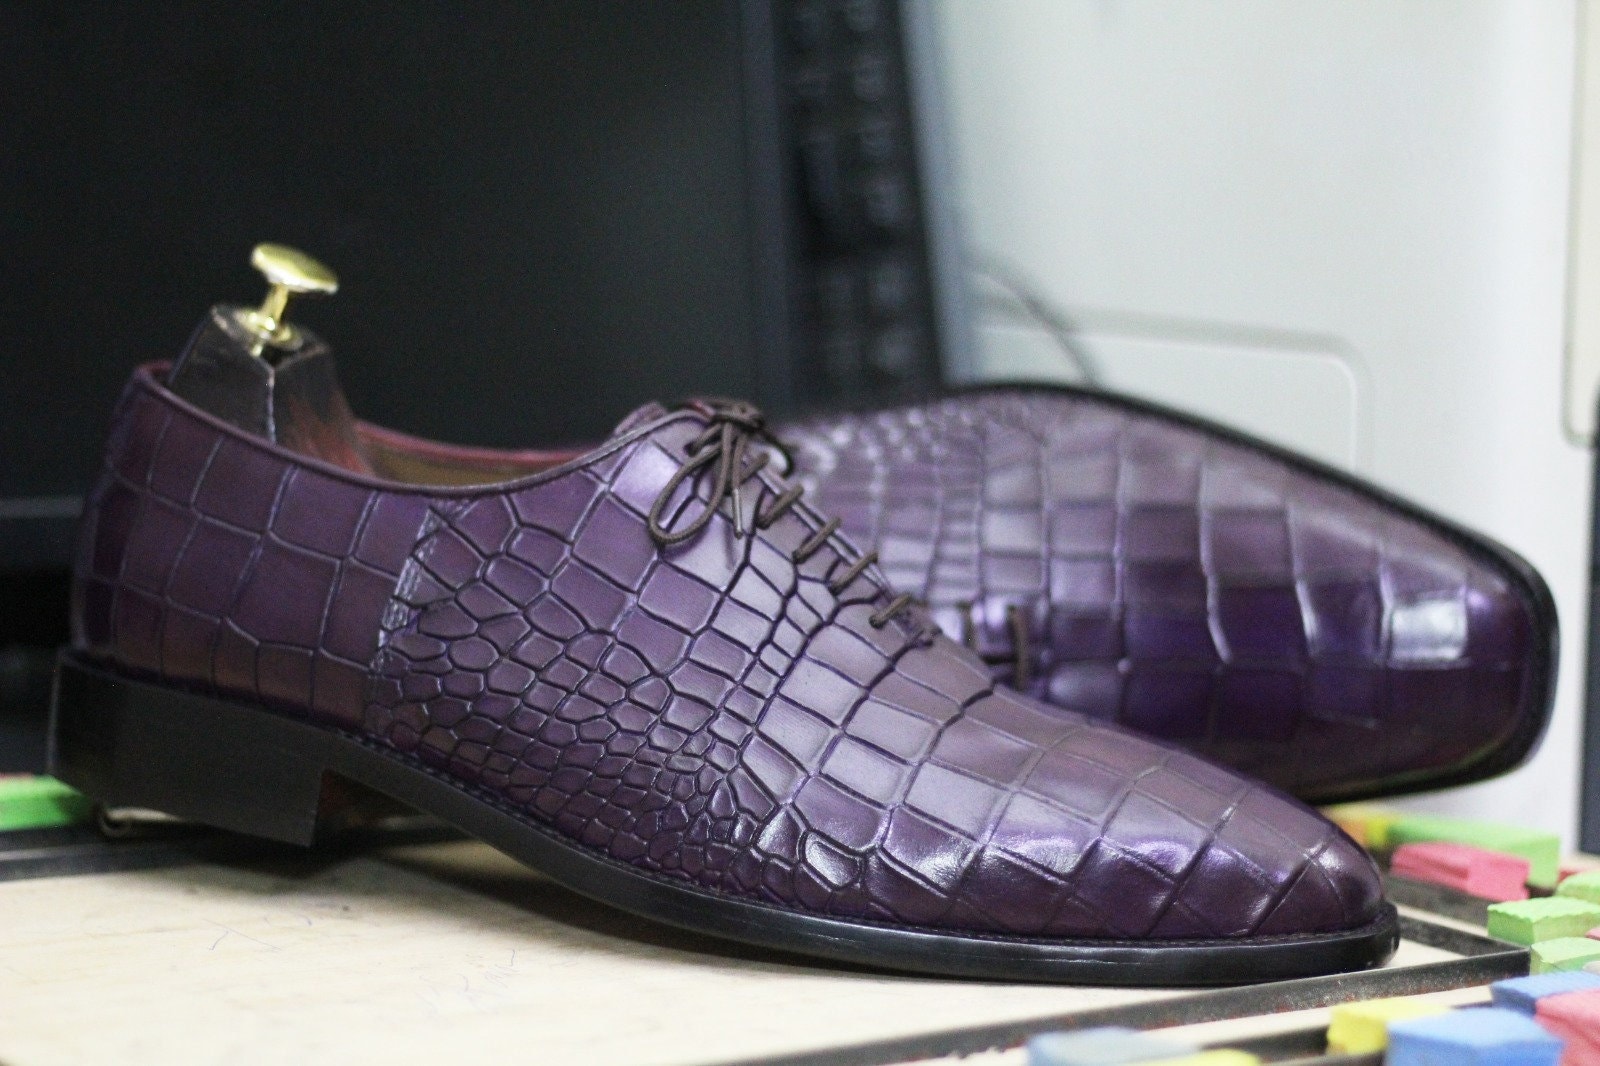  Men's Crocodile Print Oxford Shoes Dress Shoes Classical  Business Dress Shoes for Men 1779 Blue EU 38=US 5.5